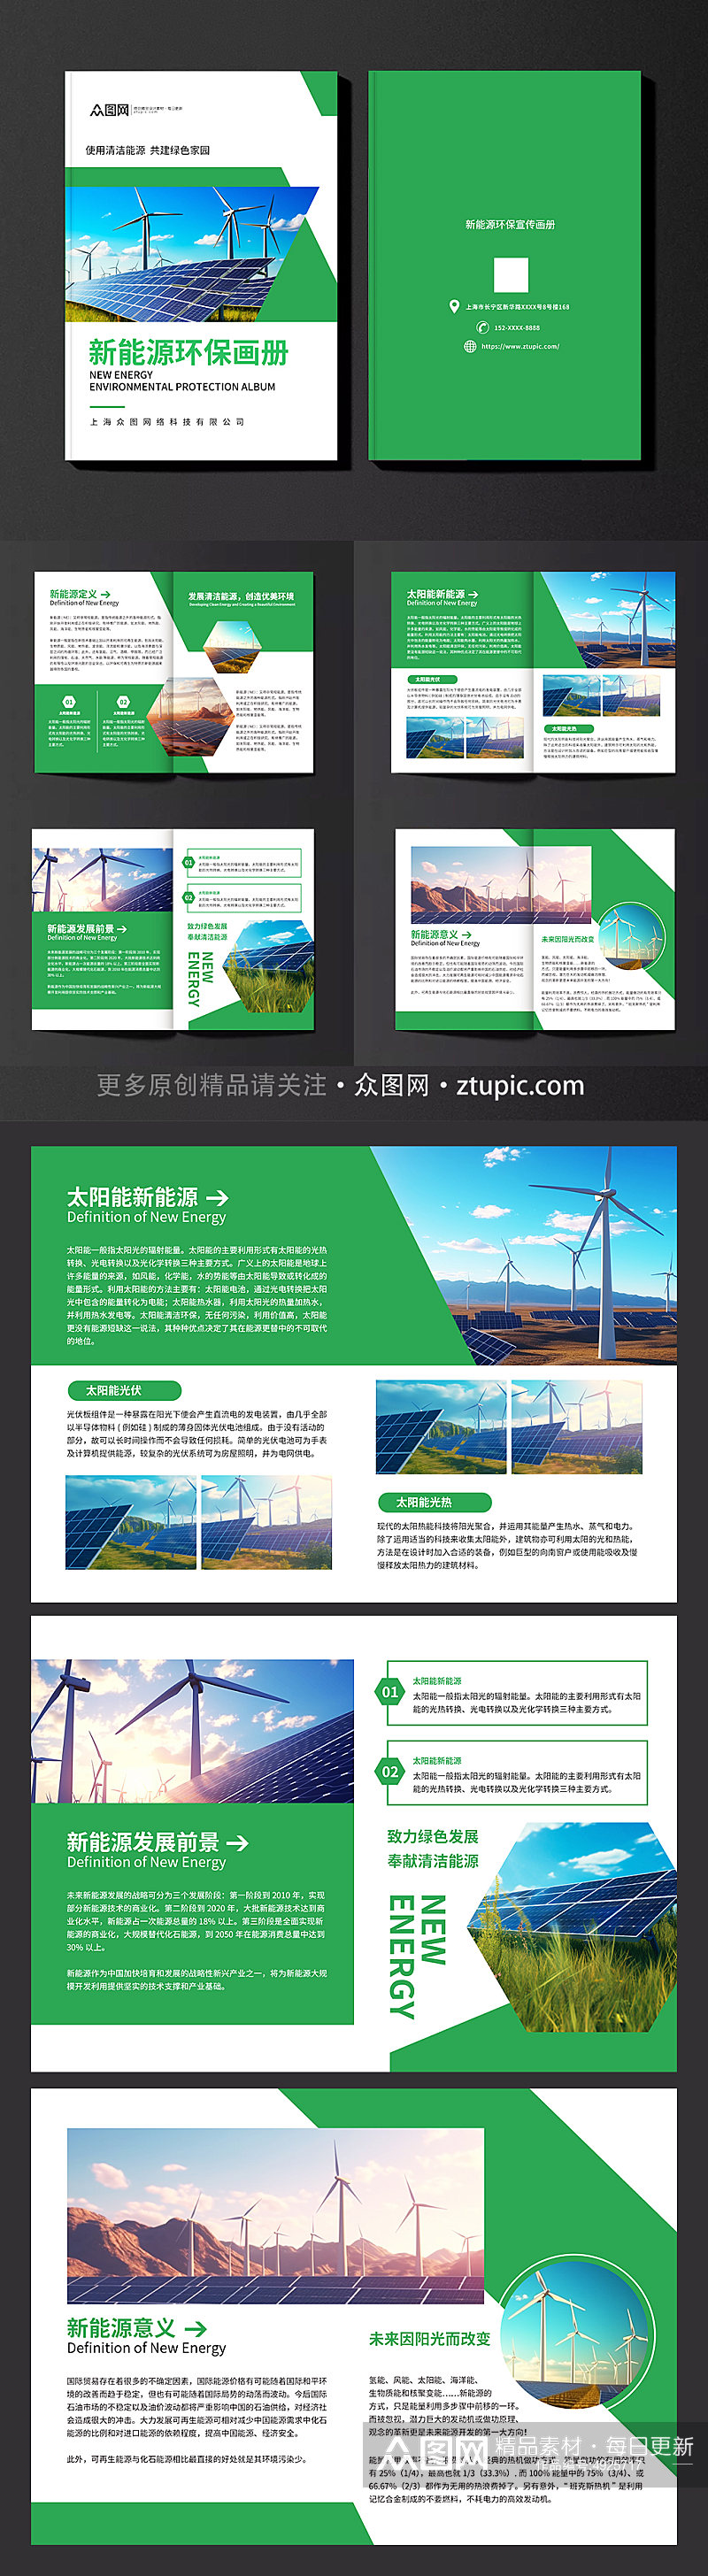 绿色新能源环保宣传画册素材